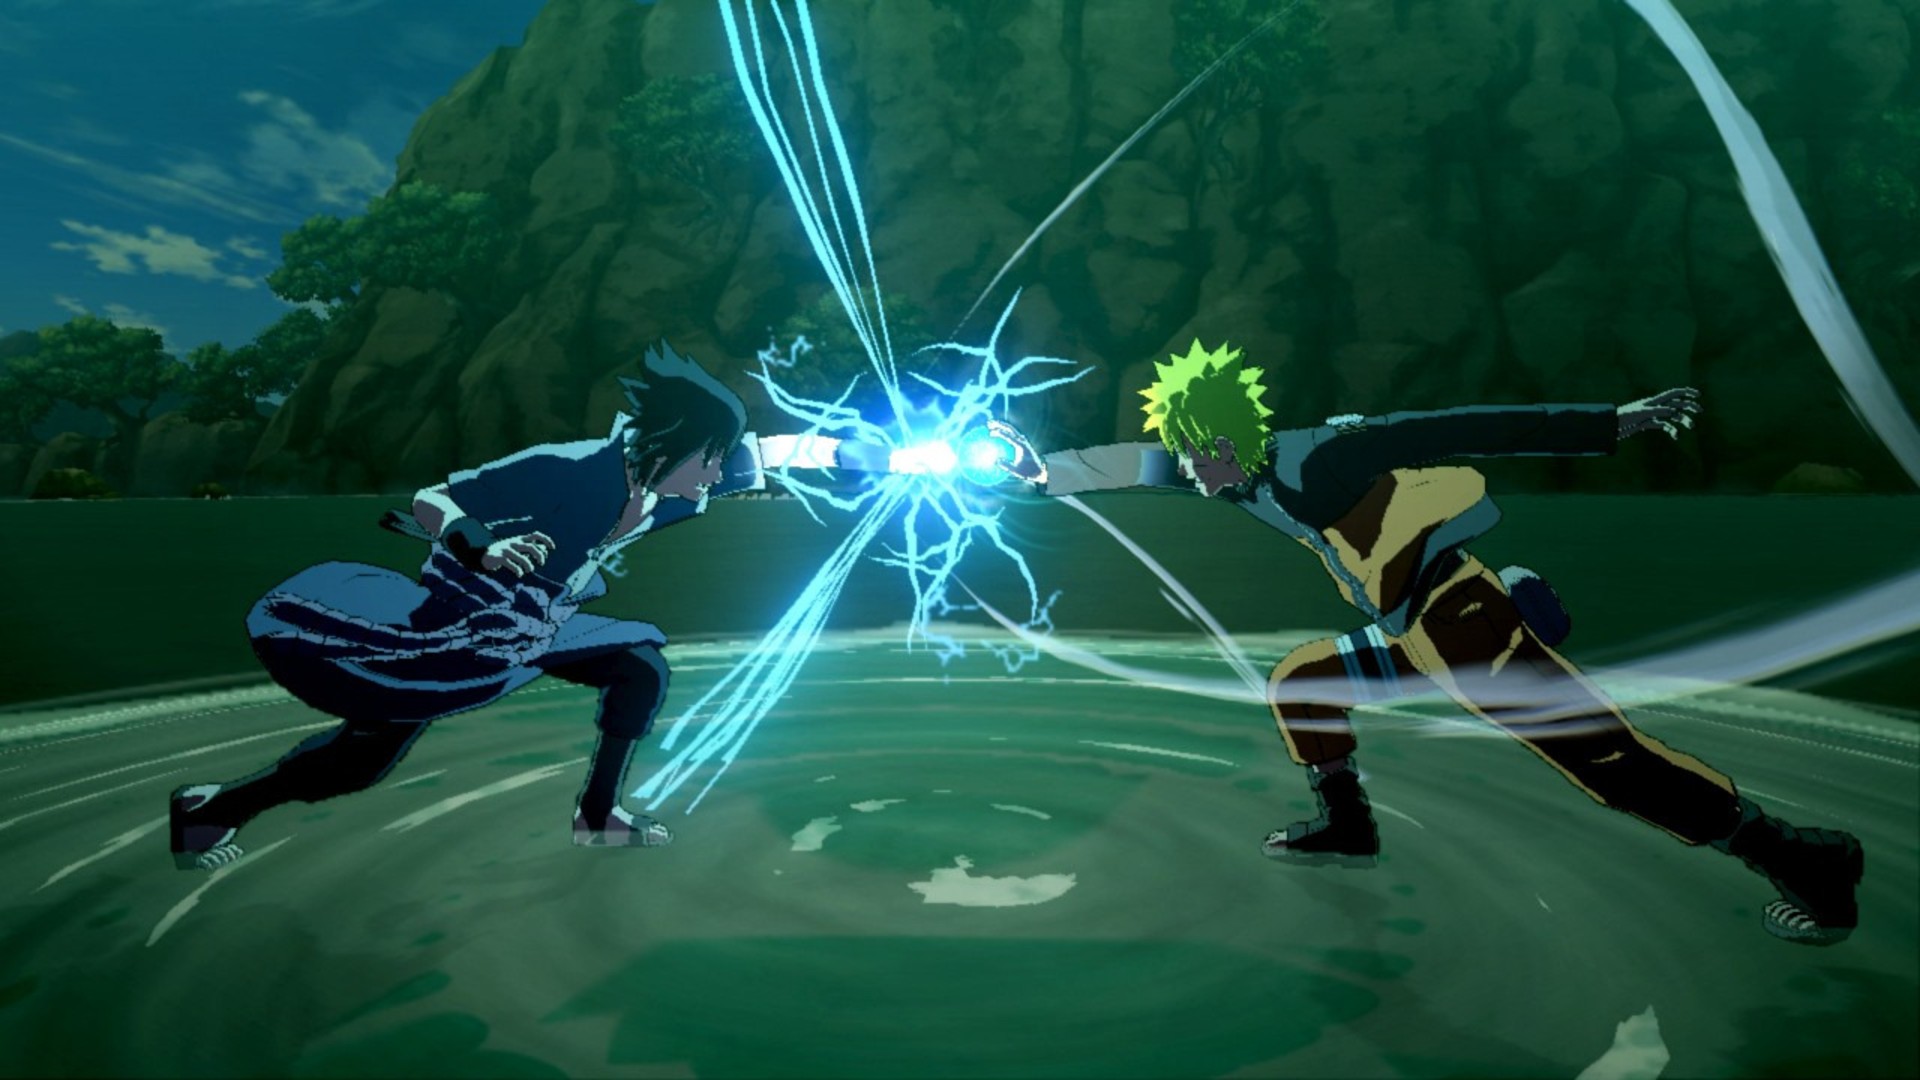 最佳動漫遊戲：火影忍者史浦登：終極忍者風暴3爆發。圖像顯示了兩個戰鬥機的拳頭碰撞並發電。